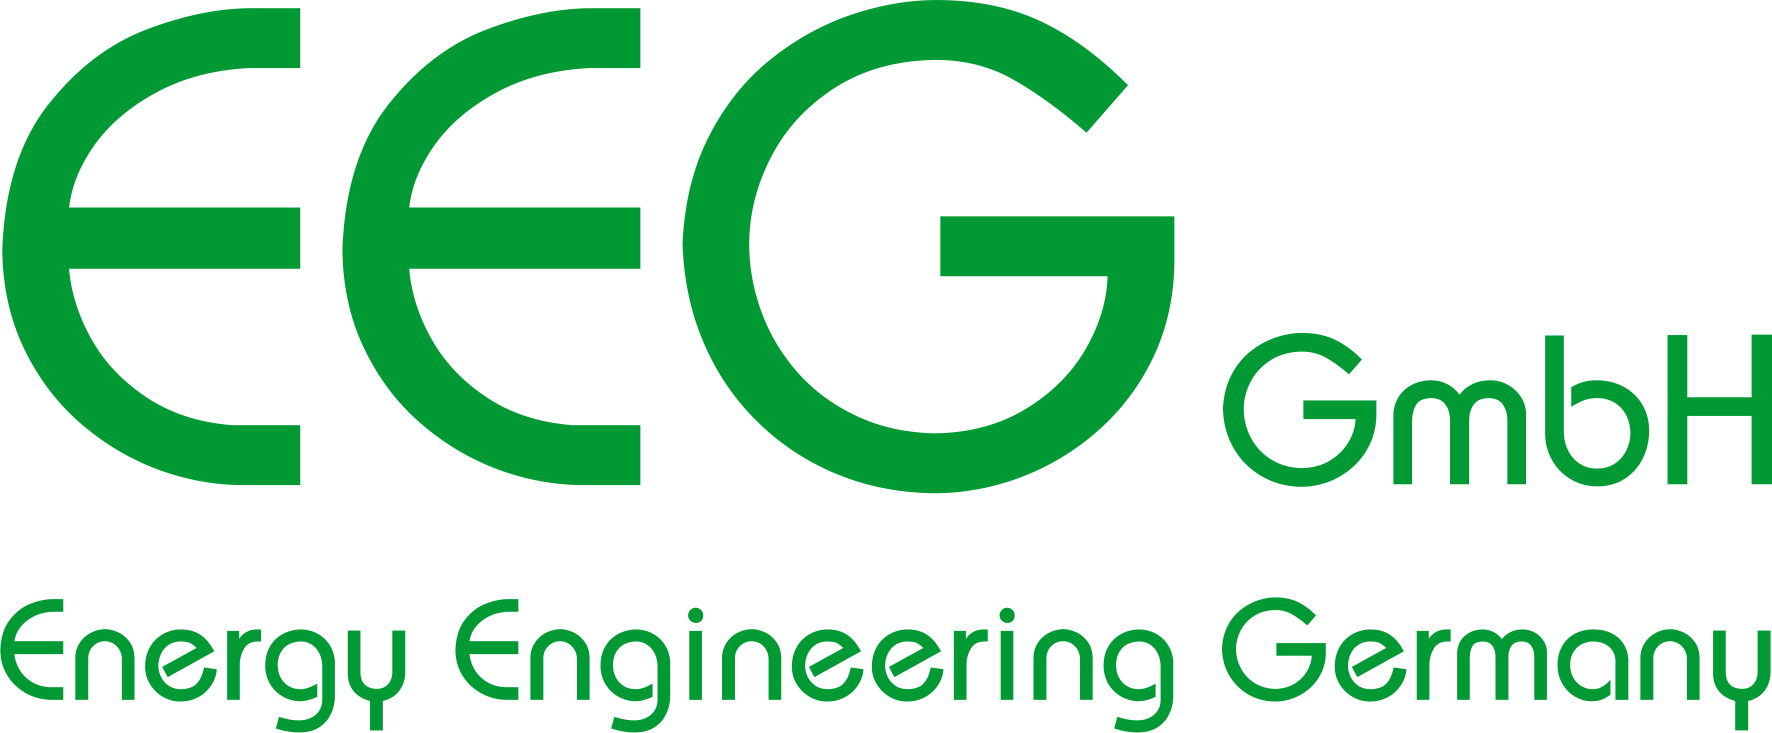 EEG (Energy Engineering Germany) GmbH